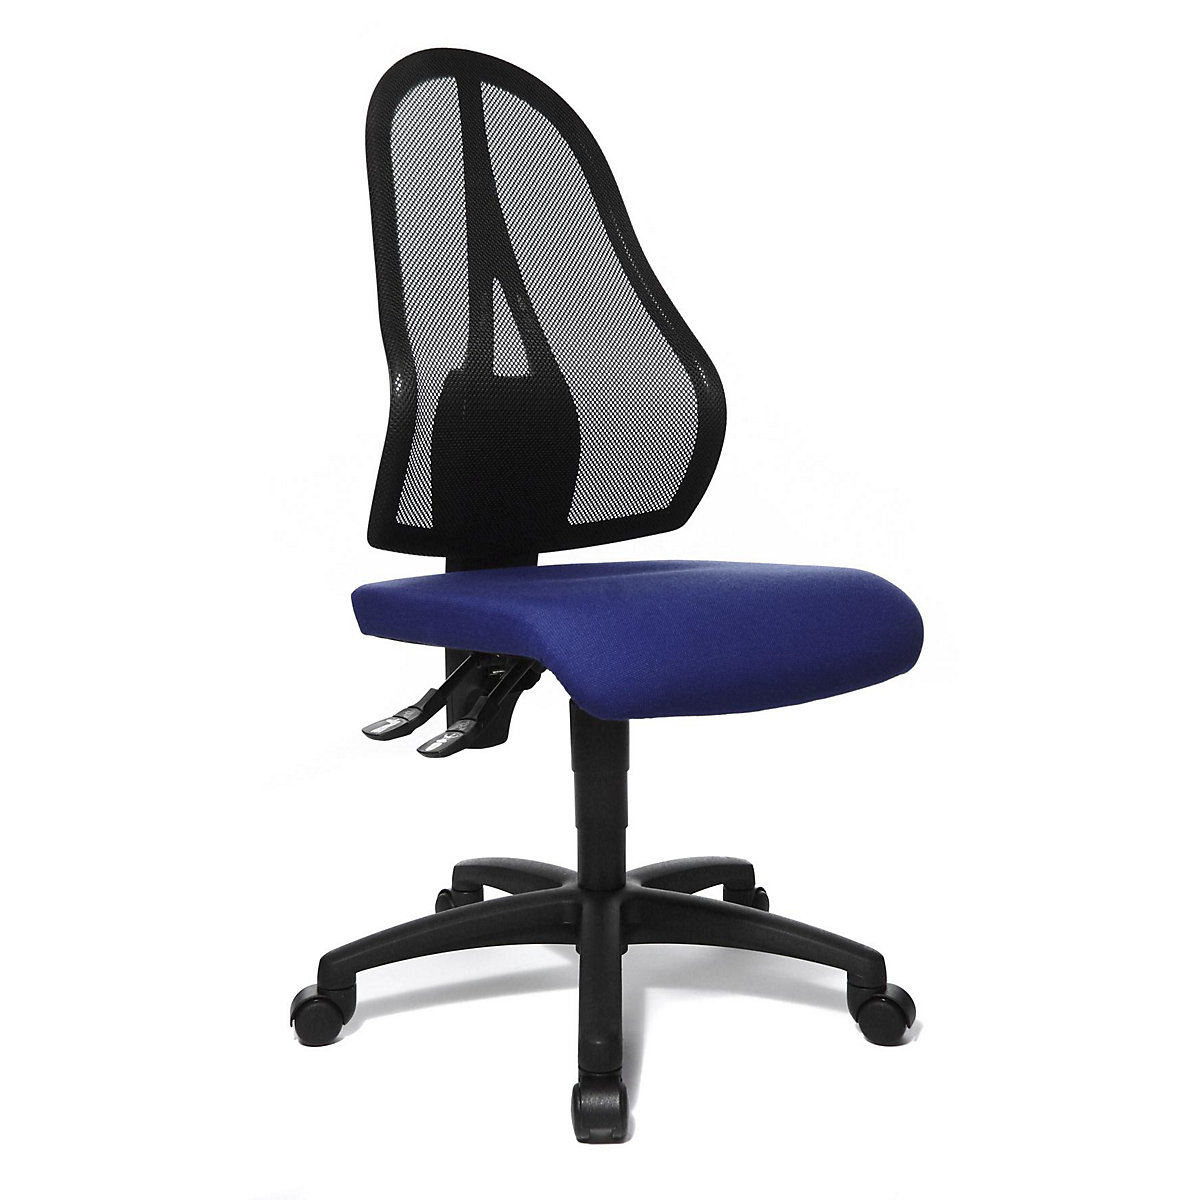 Silla giratoria de oficina OPEN POINT P – Topstar, respaldo reticulado negro, sin brazos, tapizado del asiento azul real-4